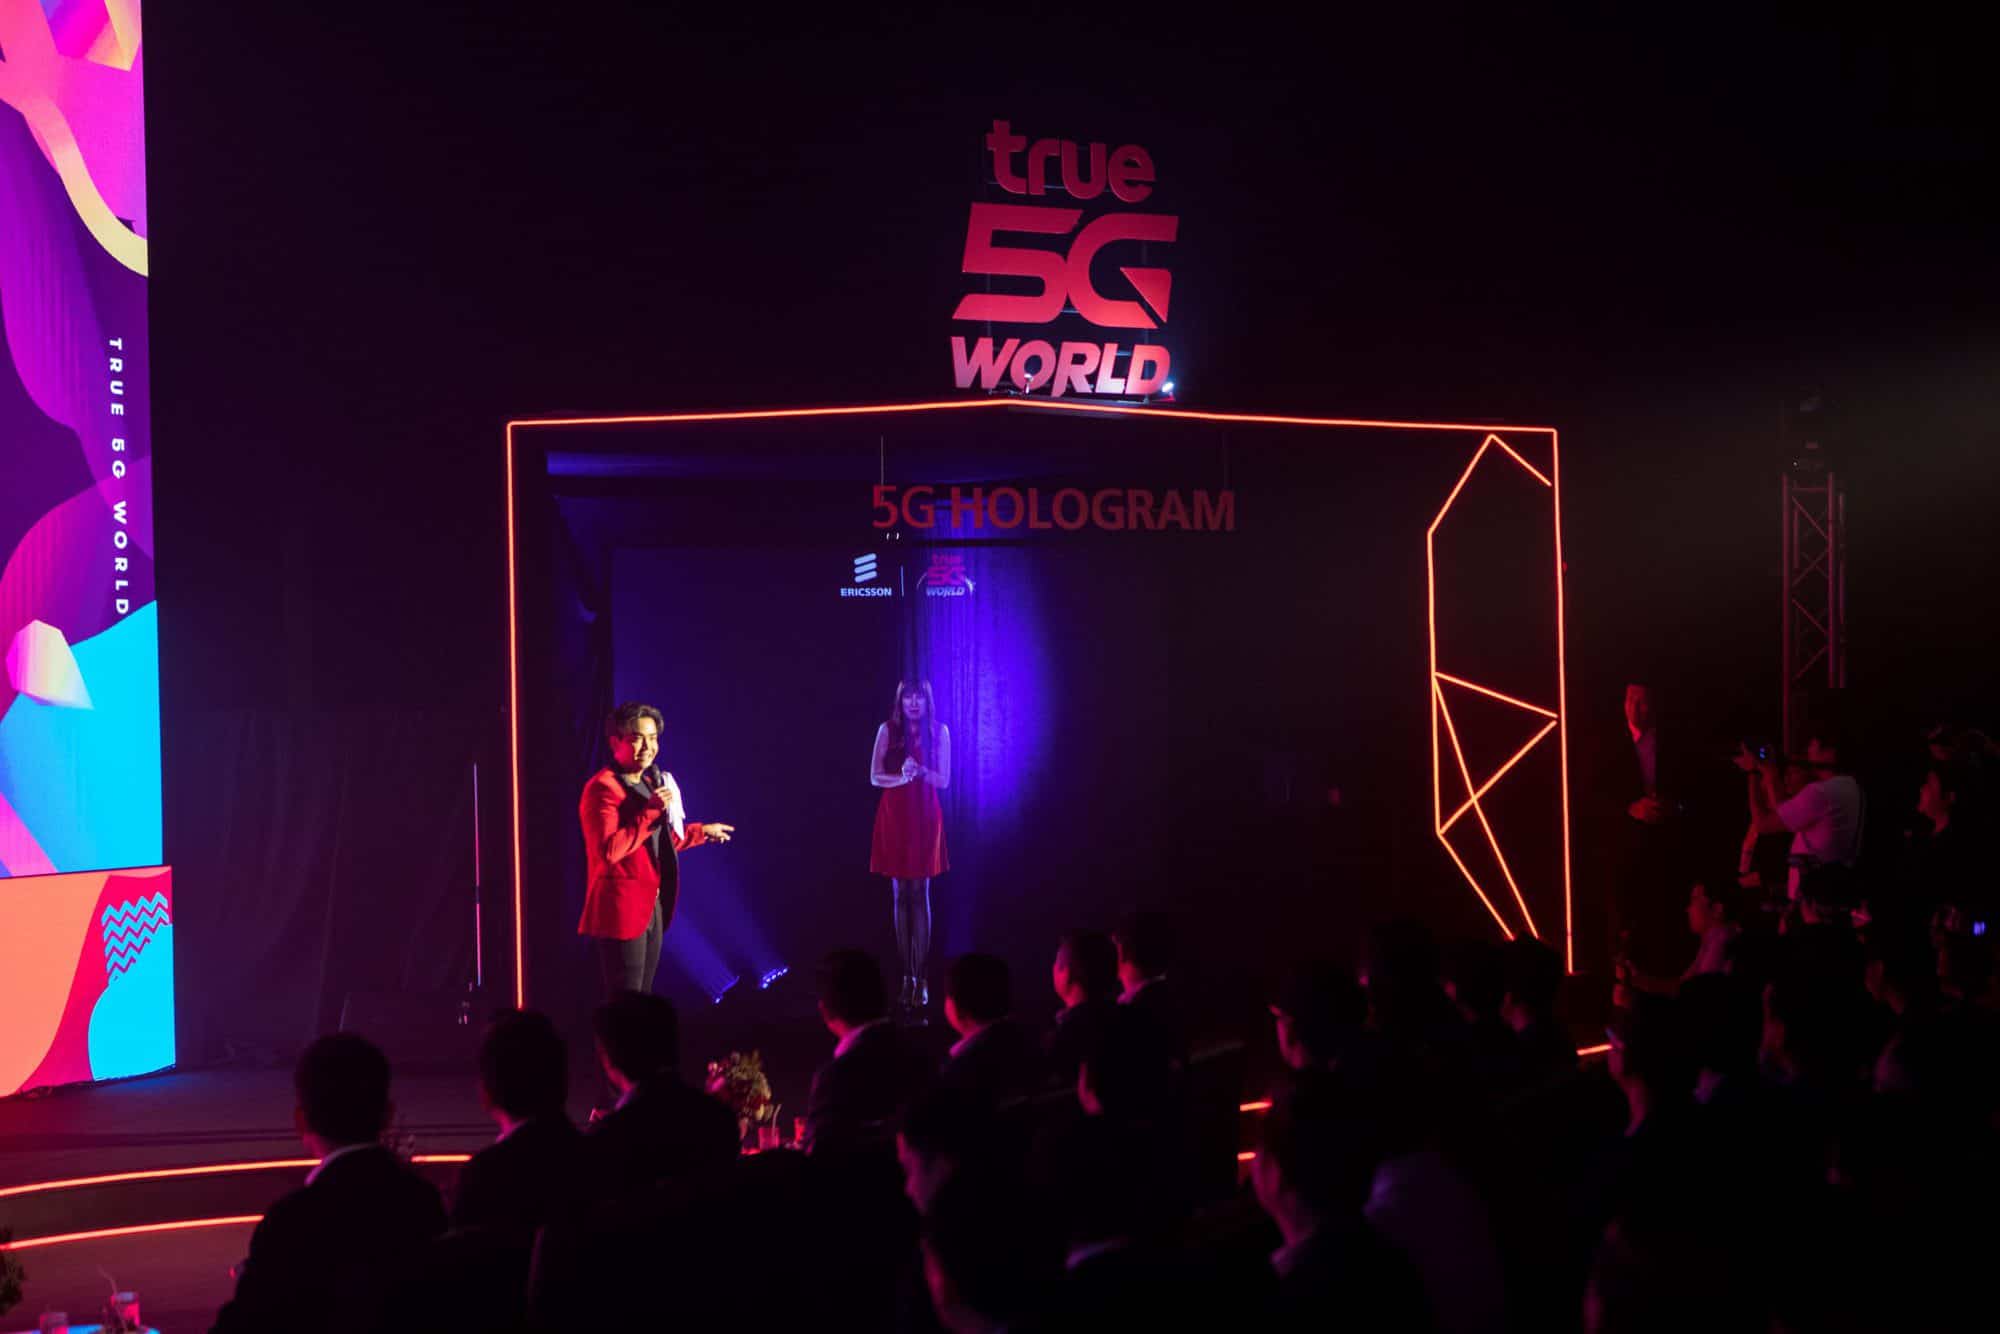 Ericsson จับมือ True โชว์ประสิทธิภาพ 5G ผ่านการแสดงดนตรีโชว์เคสครั้งแรกของประเทศไทย 1